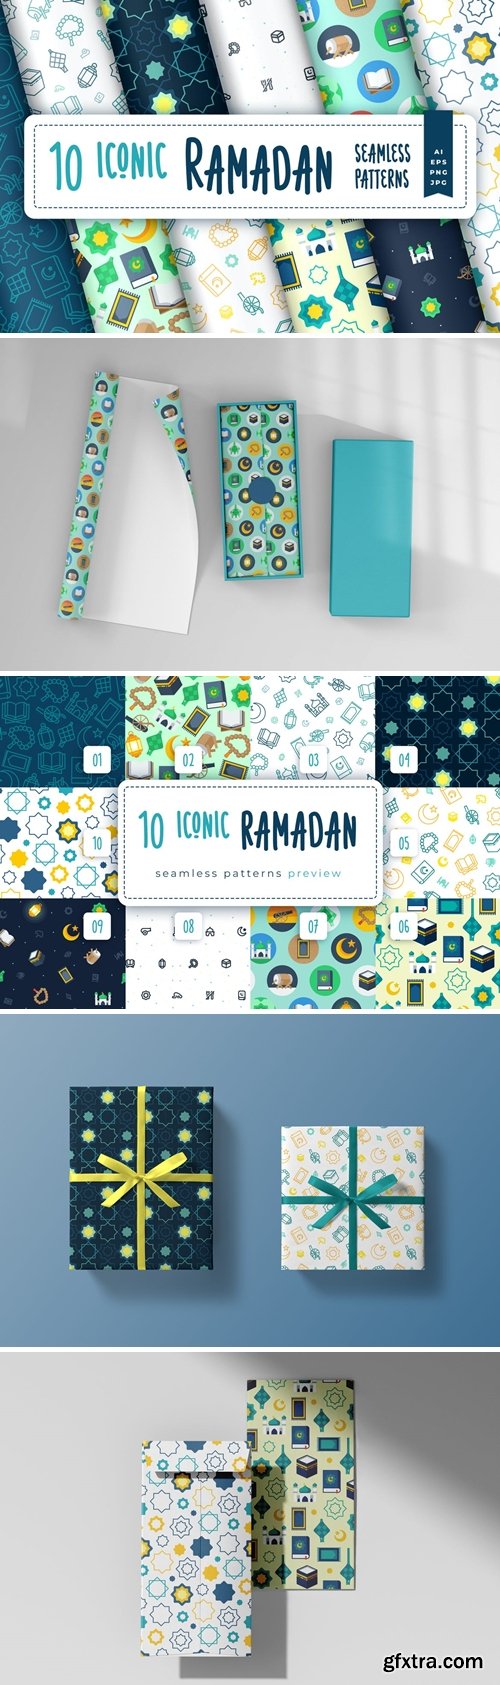 Iconic Ramadan Seamless Pattern